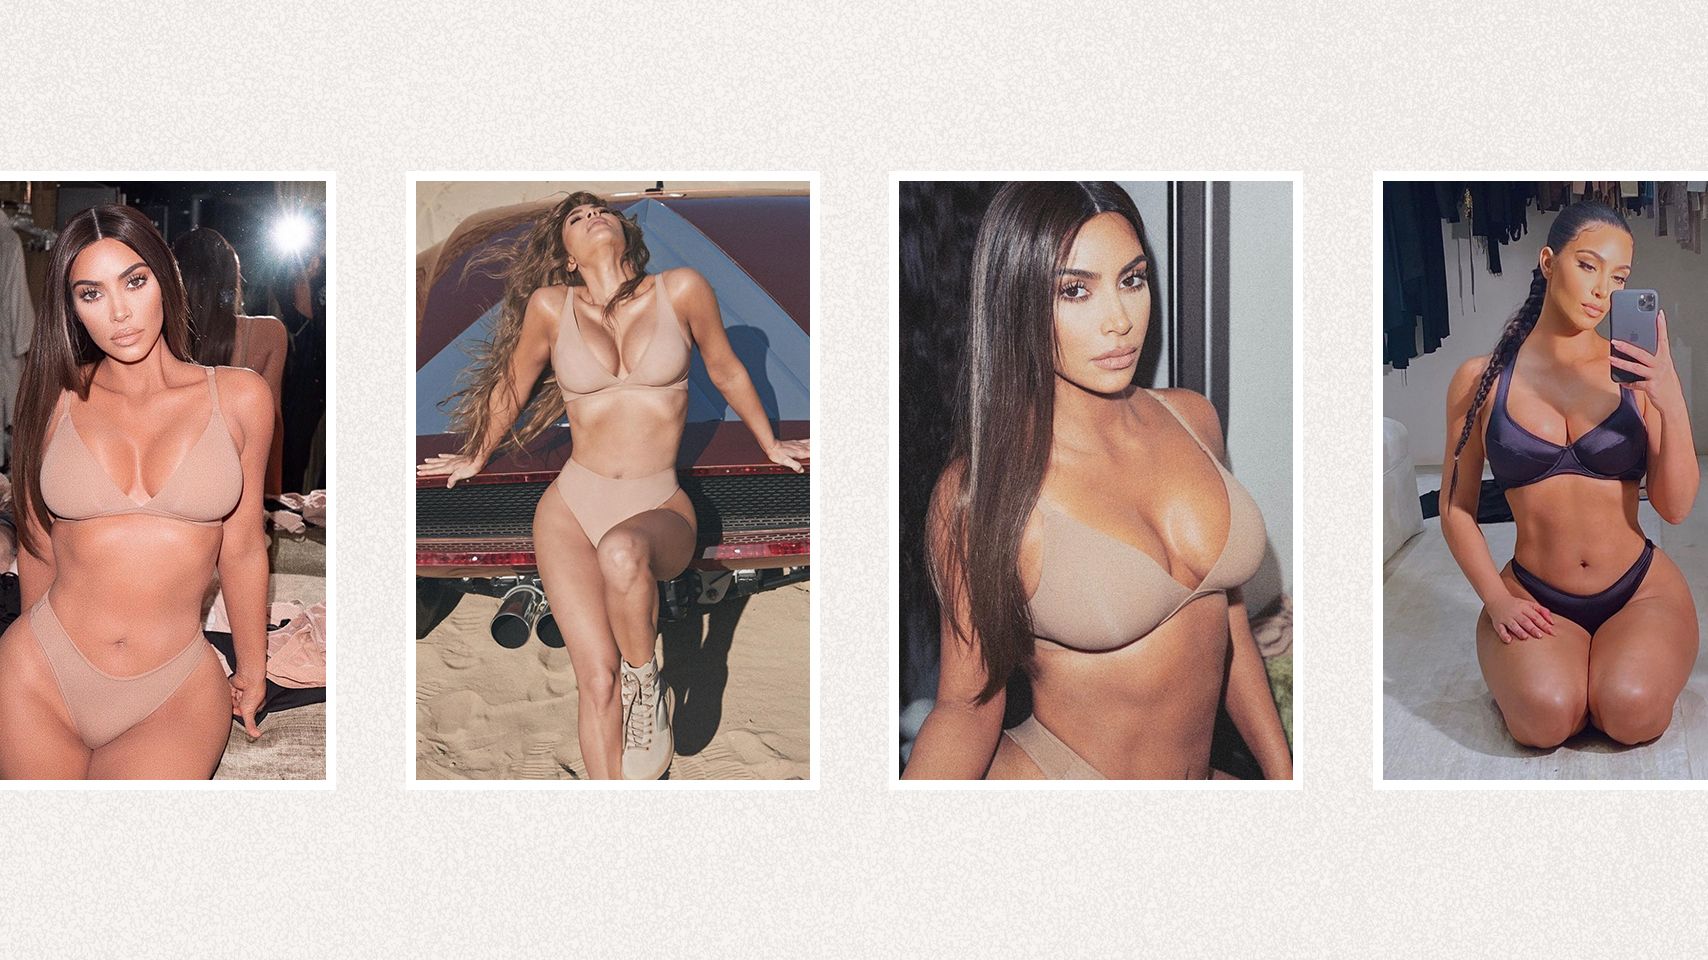 Teen Tiny Tits Hd - Kim Kardashian's Best Nudes - All of Kim K's Best Boob Instagram Pics